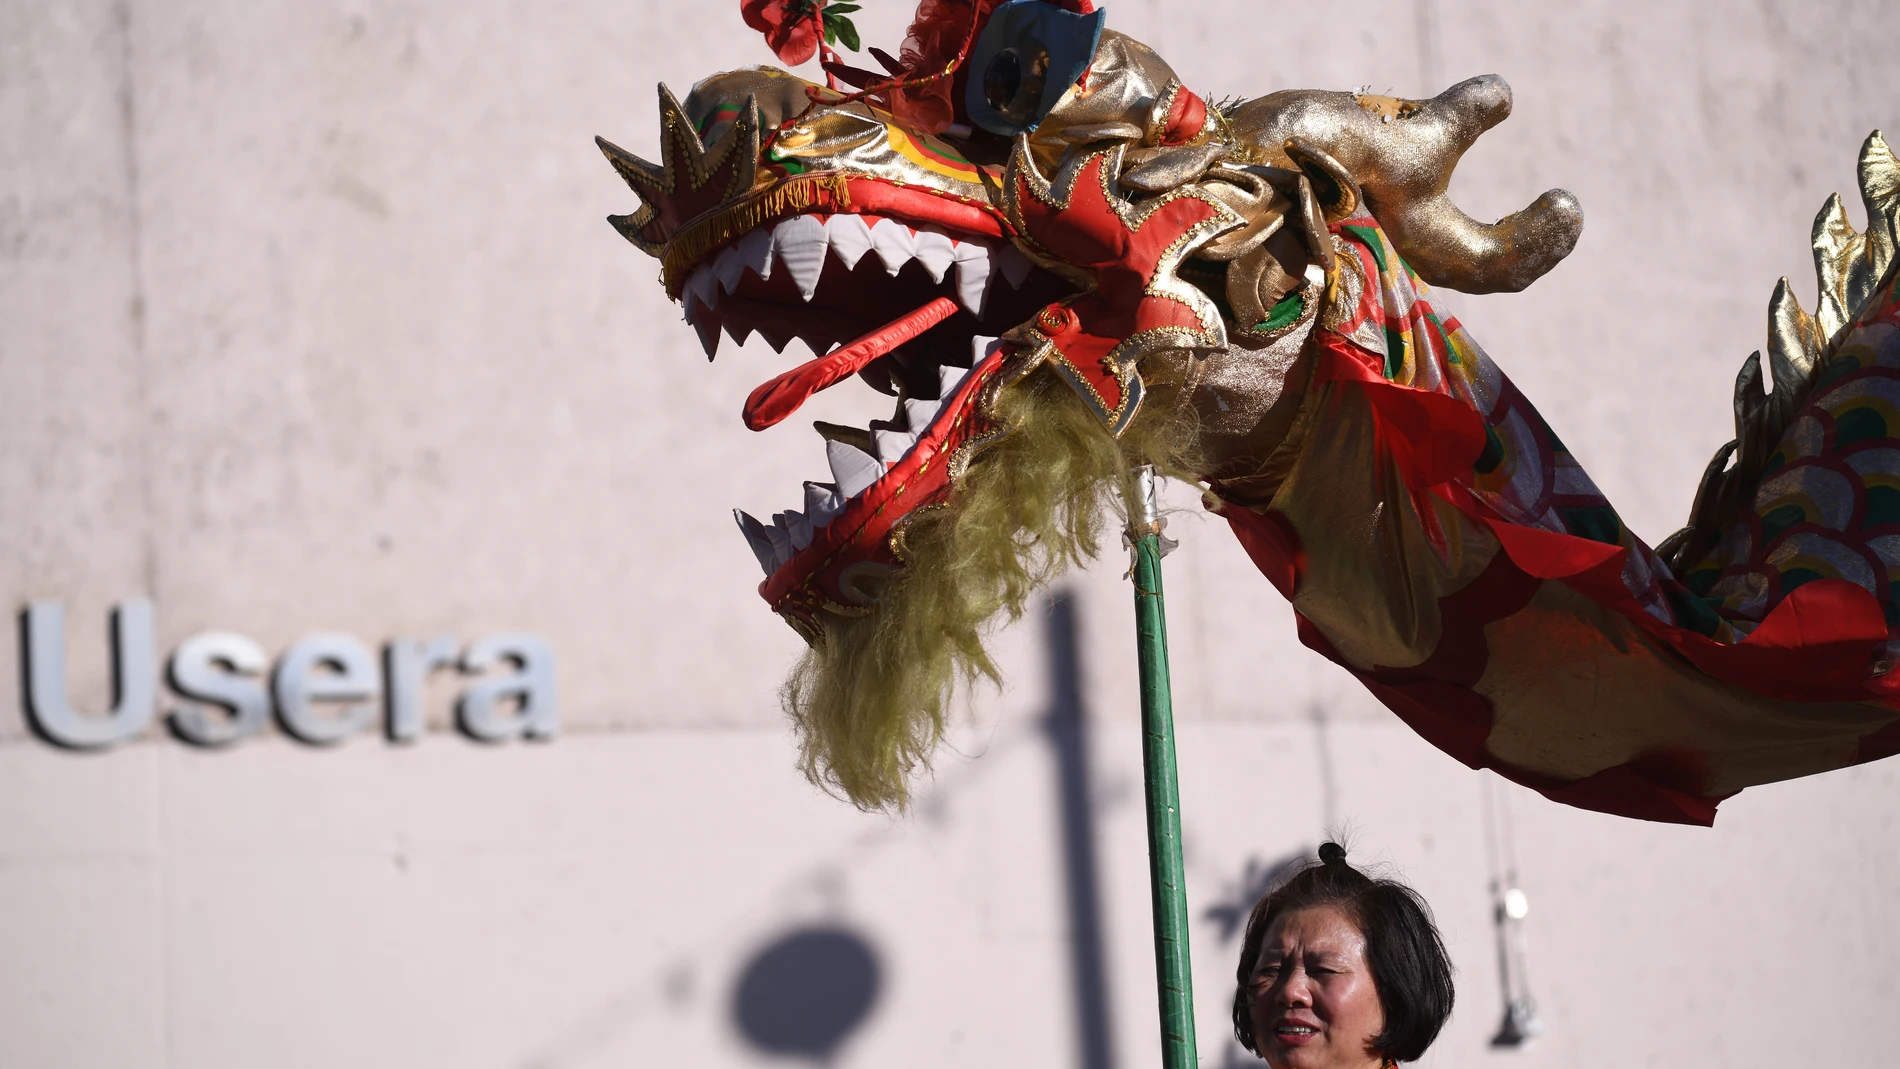 Una mujer sujeta la cabeza de un dragón durante las celebraciones del Año Nuevo Chino en la plaza de Distrito de Usera, a 20 de enero de 2023.